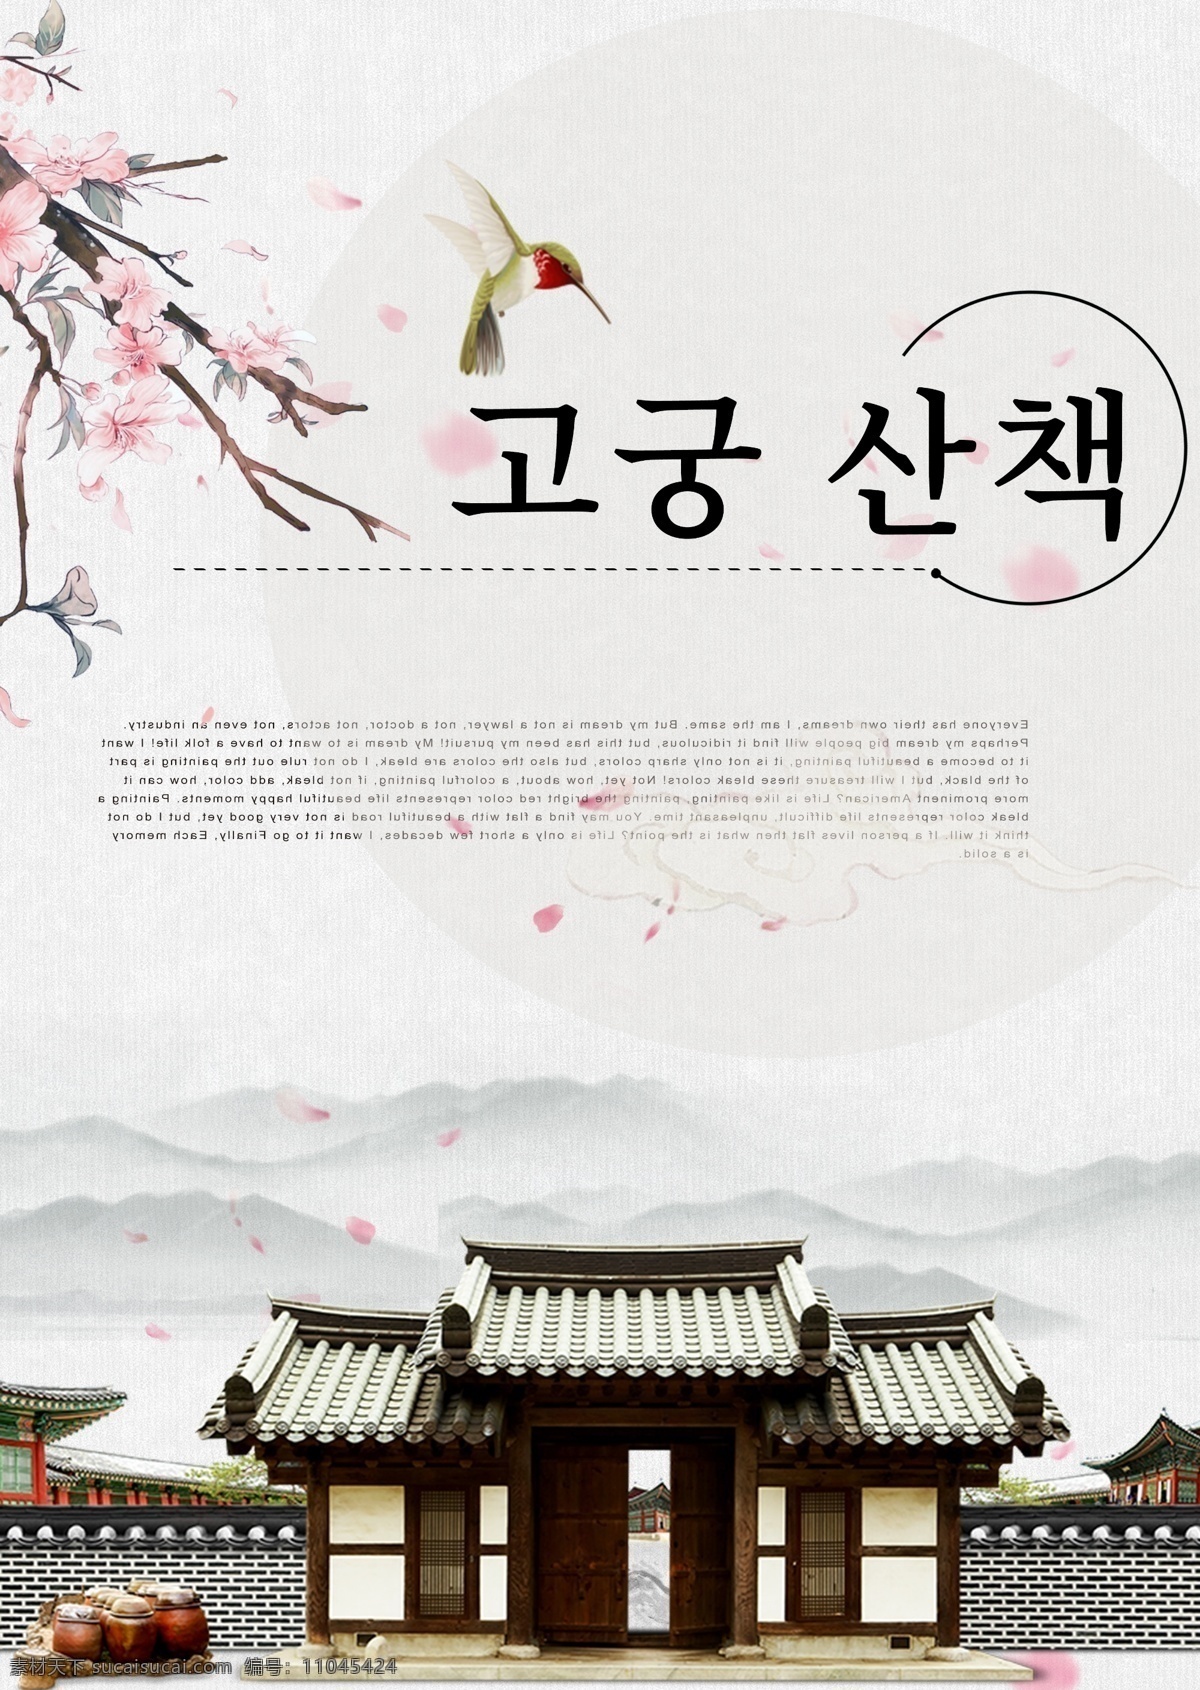 灰色 古典 美丽 法院 步行 花 海报 橙子 颜色 简单 墨 冬季 朝鲜的 中文 英语 紫色 红色 李子 古建筑 华丽的 鸟类